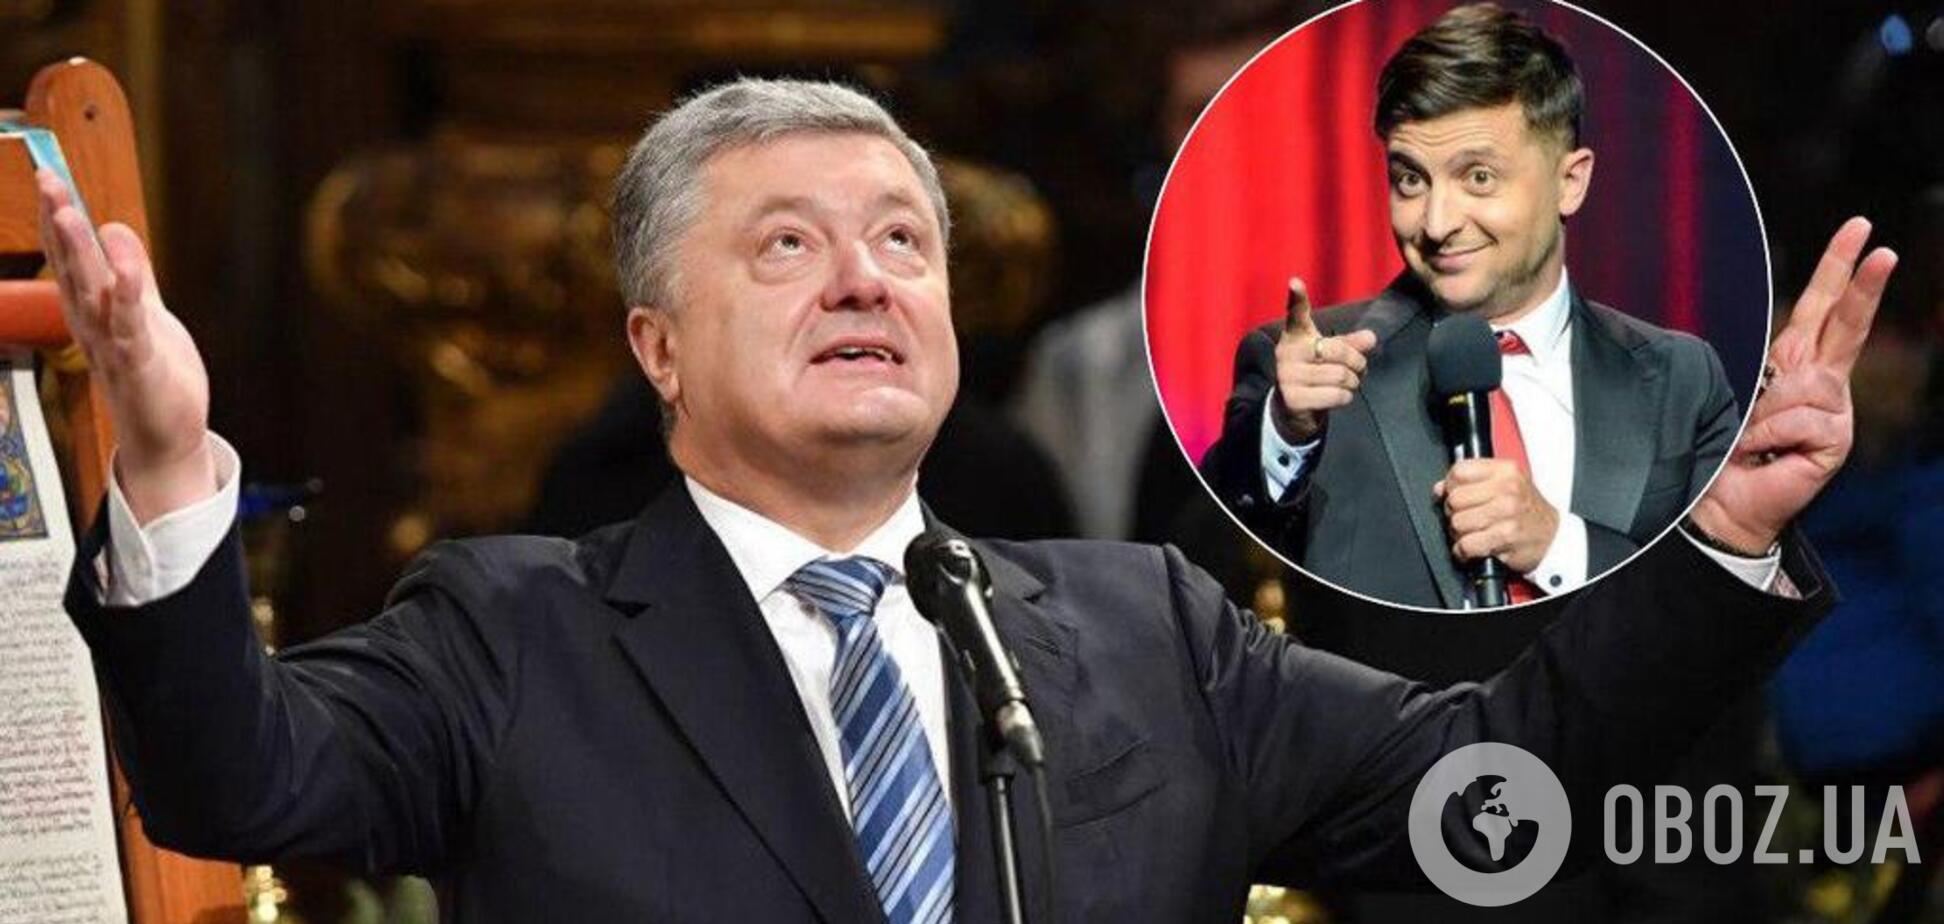 Зеленский vs Порошенко: социолог назвал победителя второго тура